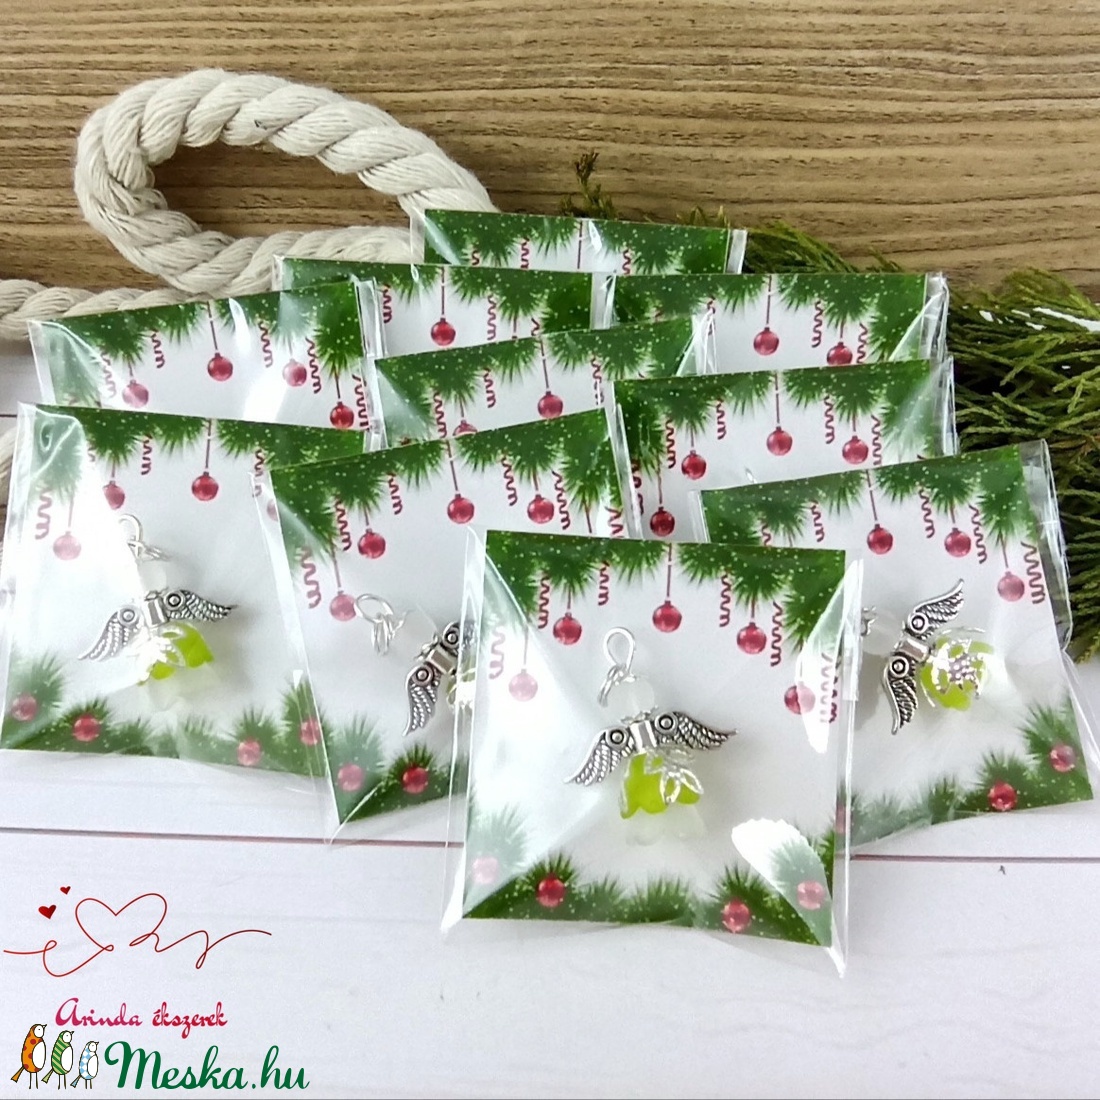 Frissesség zöld angyal 5 darabos csomag pedagógus karácsony mikulás szülinap névnap medál ajándékkísérő karácsonyfadísz - karácsony - karácsonyi lakásdekoráció - Meska.hu